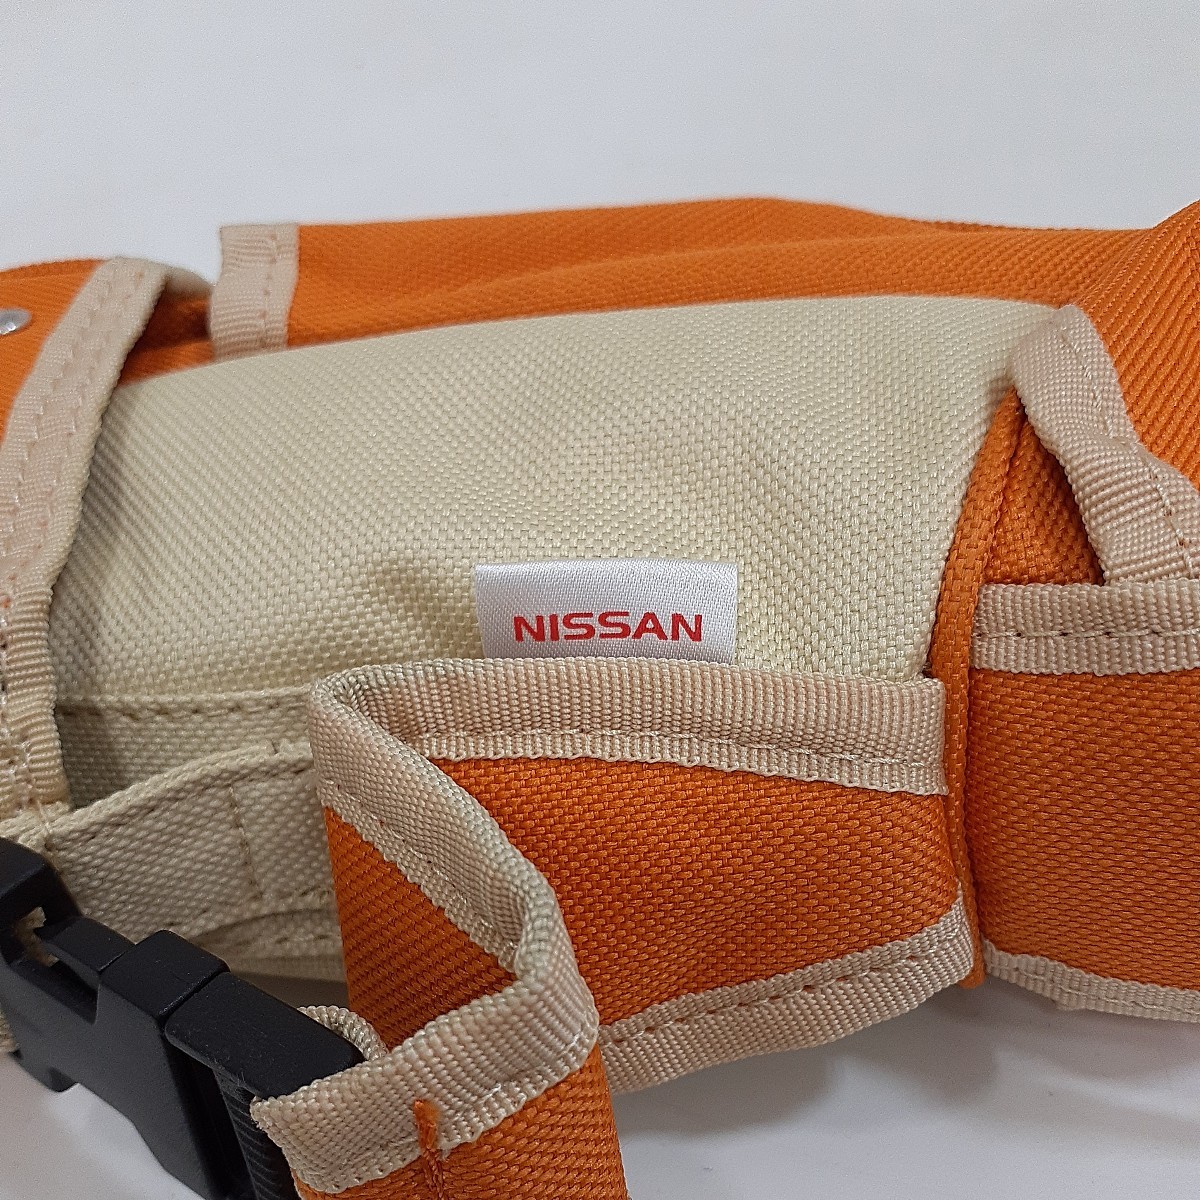 日産 NISSAN キャディバッグタイプ ペットボトルホルダー 500ml用 2個セット 非売品 ノベルティーの画像10